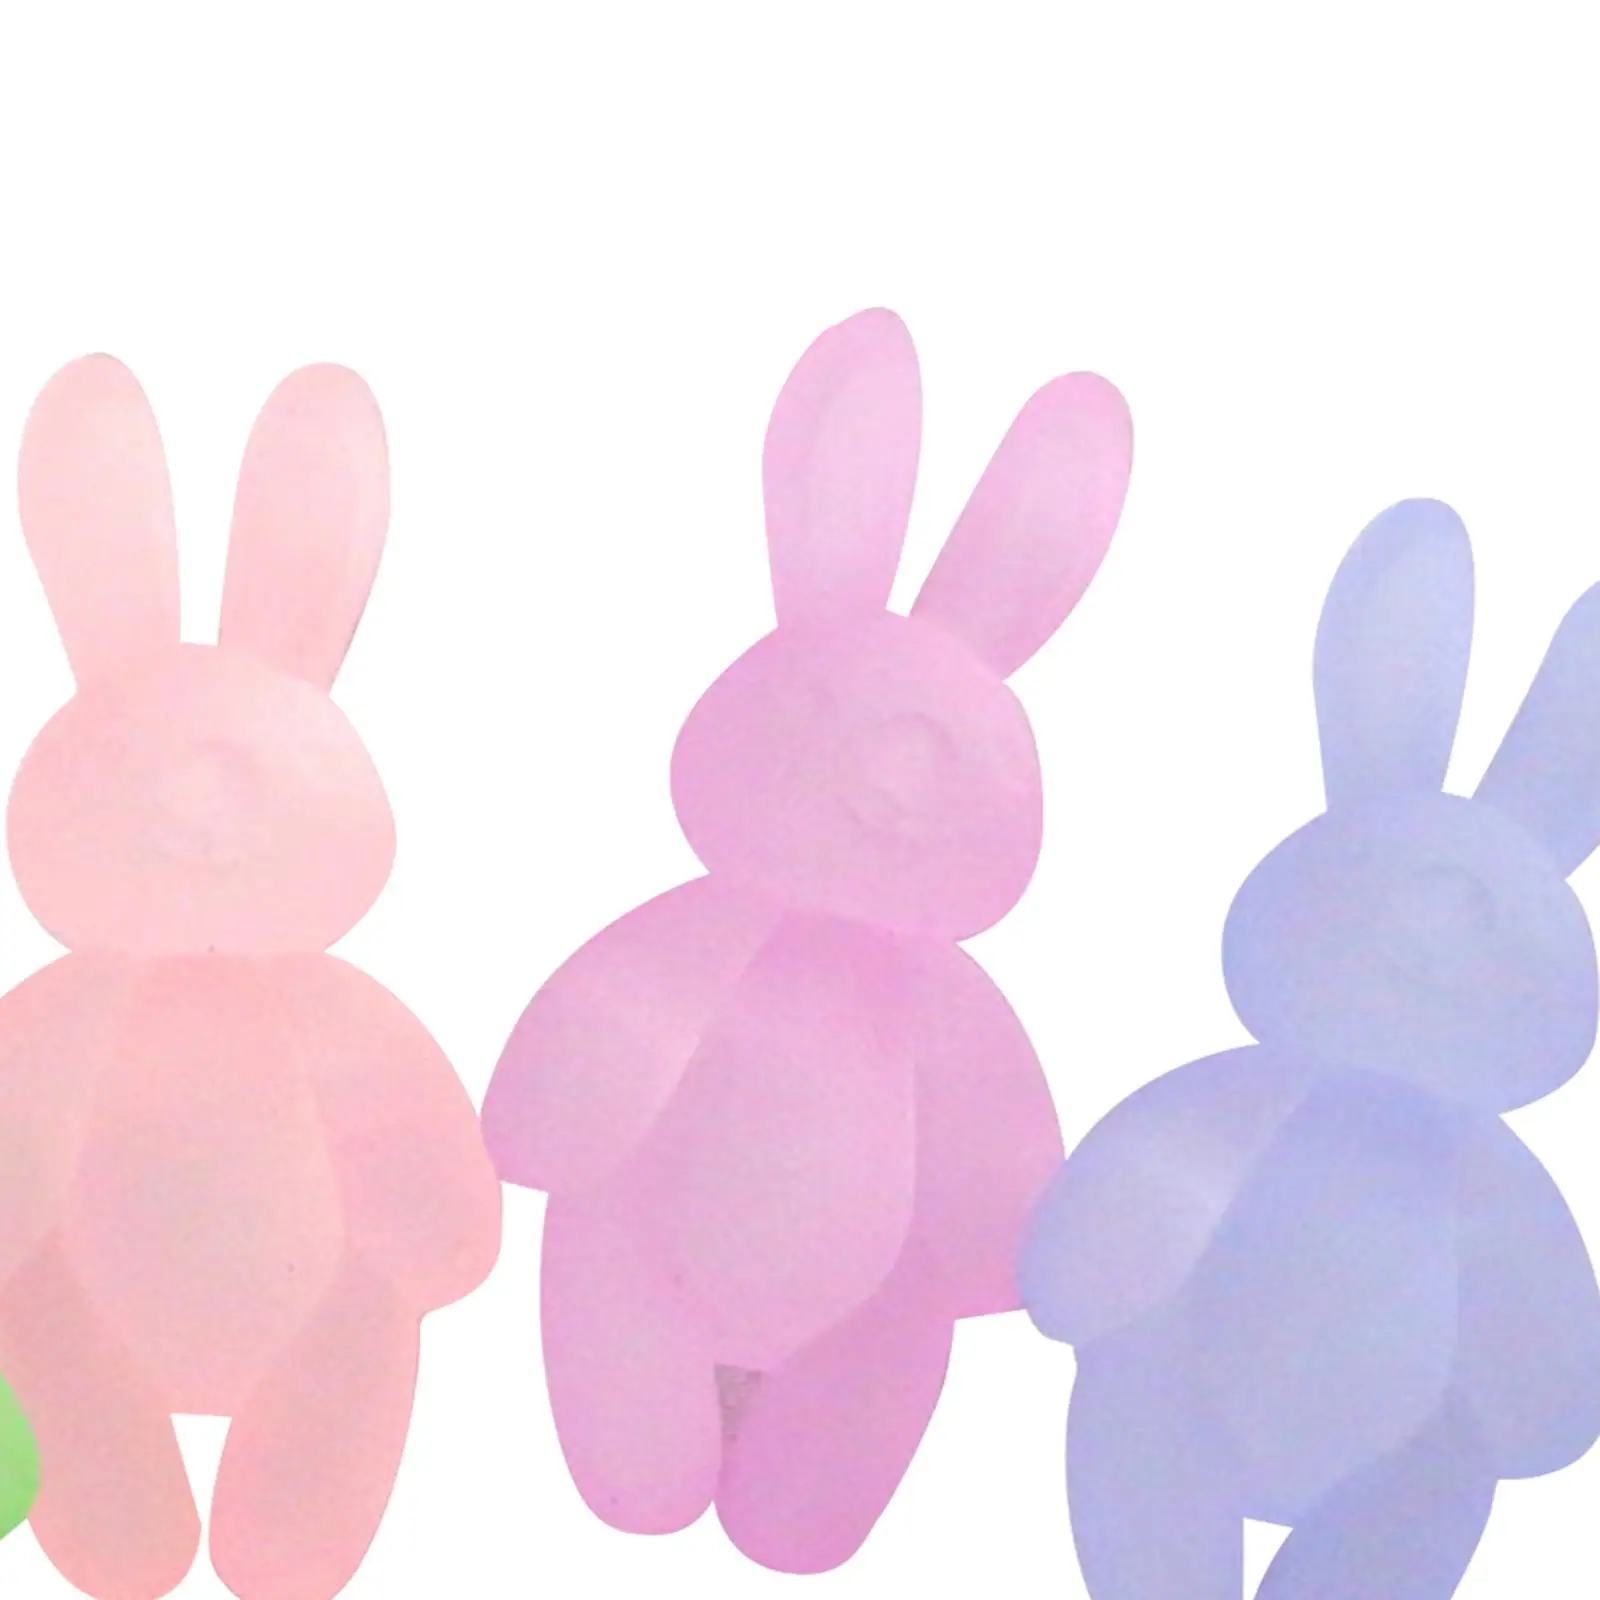 4 штуки кукольных мини-фигурок кроликов 1:12, Аксессуар для сцены из жизни в спальне